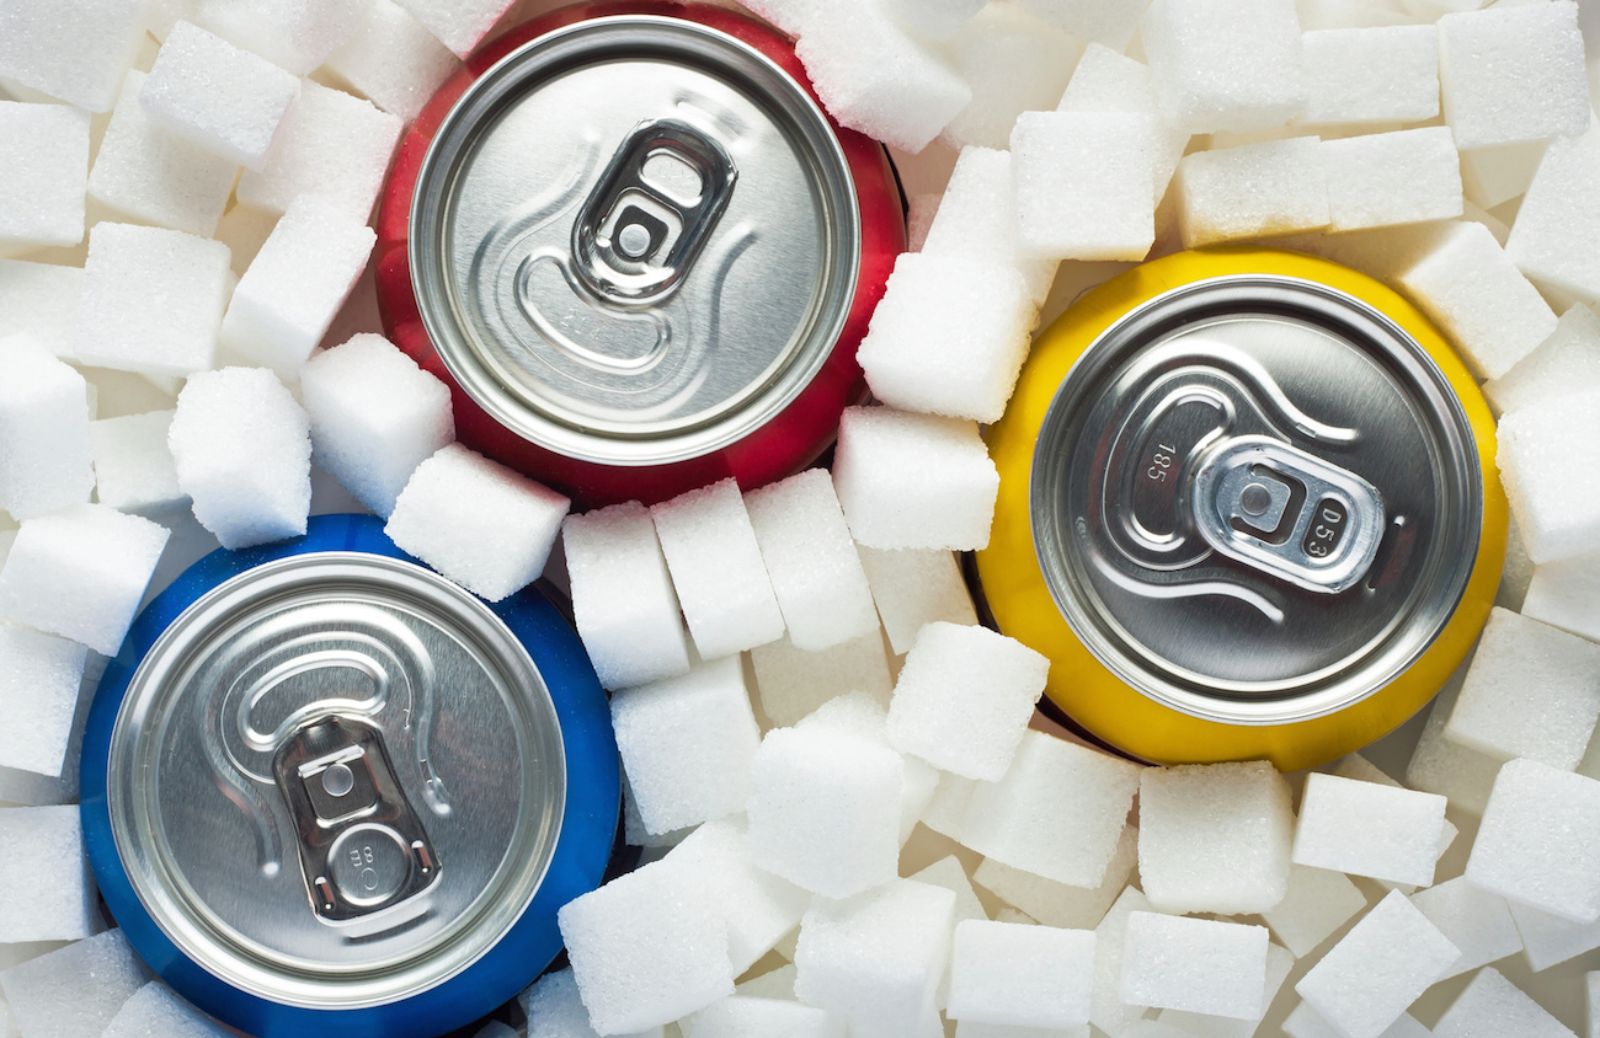 Bibite e pancetta: le bevande zuccherate aumentano il grasso viscerale